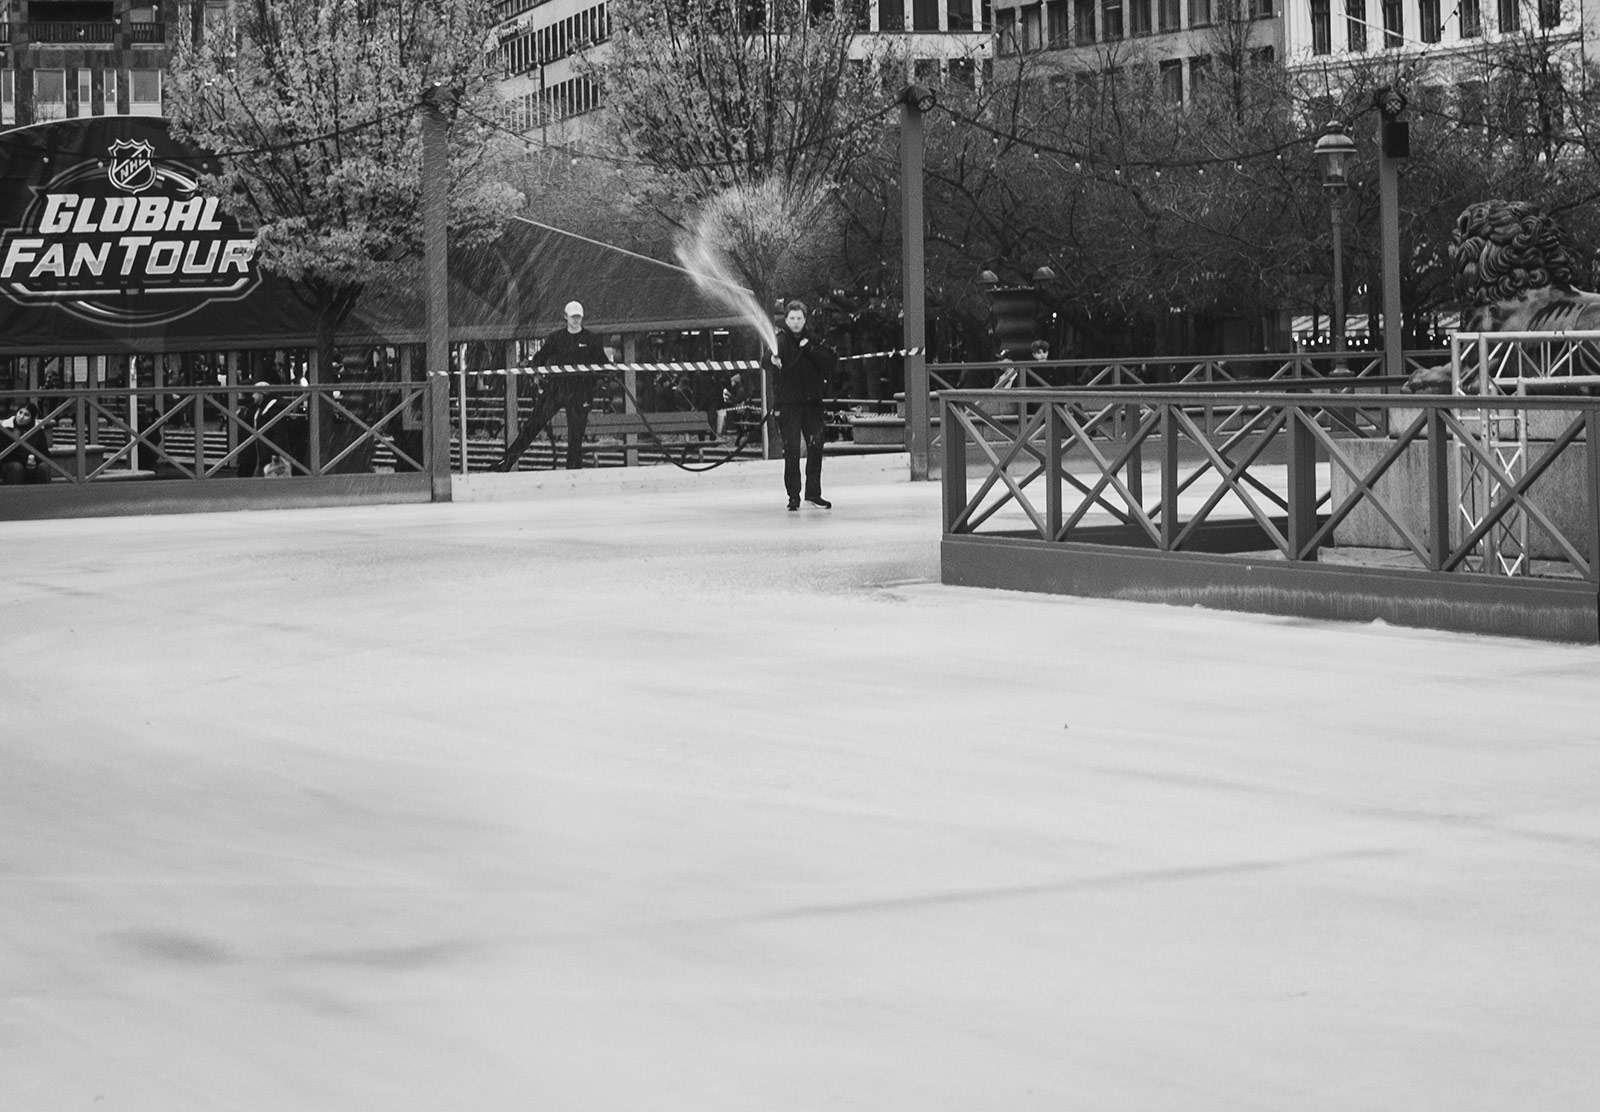 Man spraying ice on skating rink